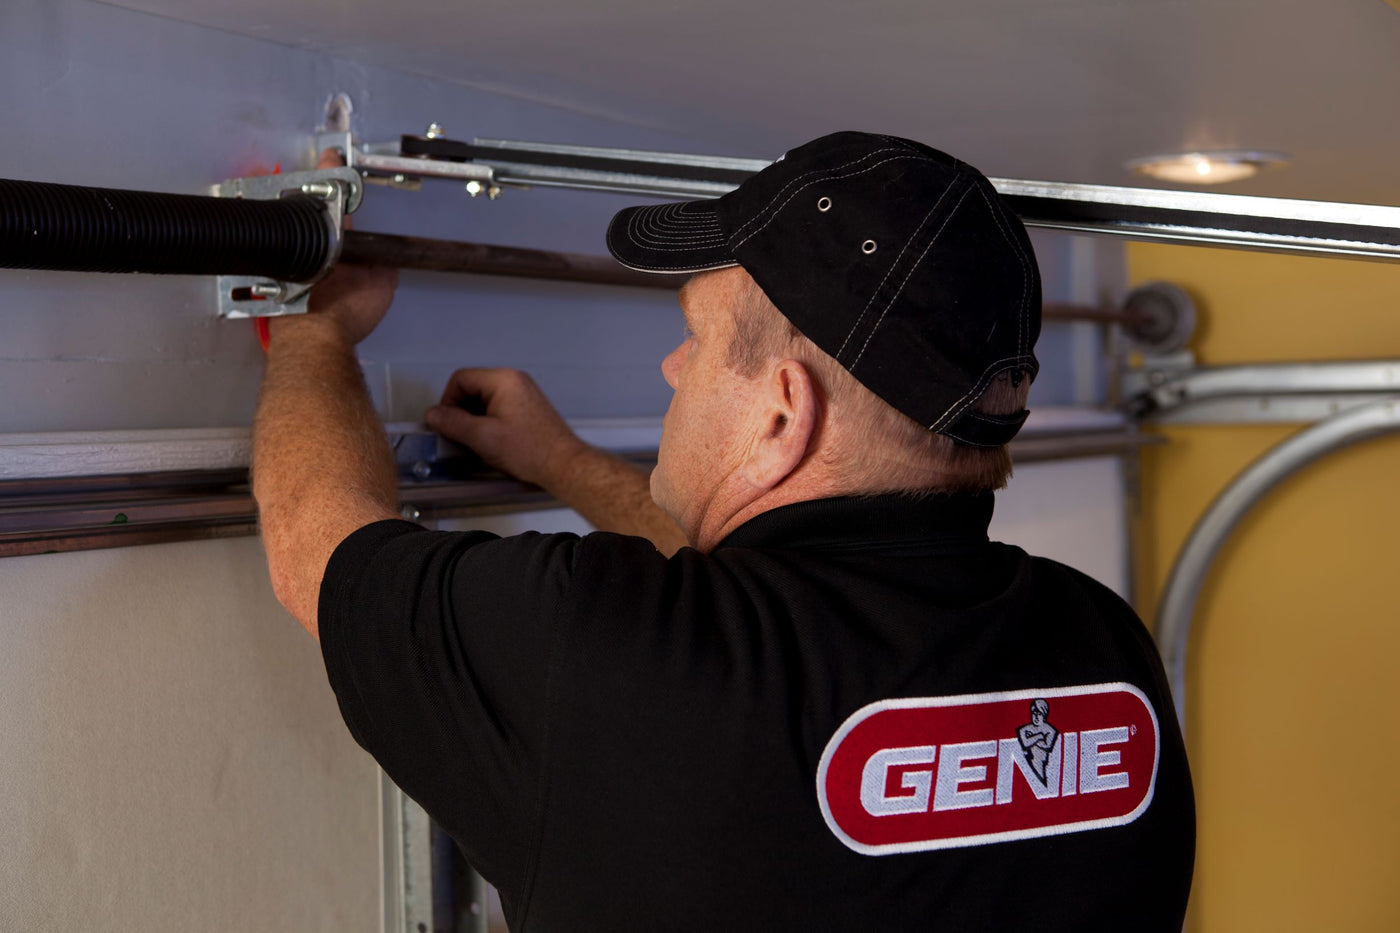  Genie Garage Door Opener Not Opening All The Way for Modern Garage